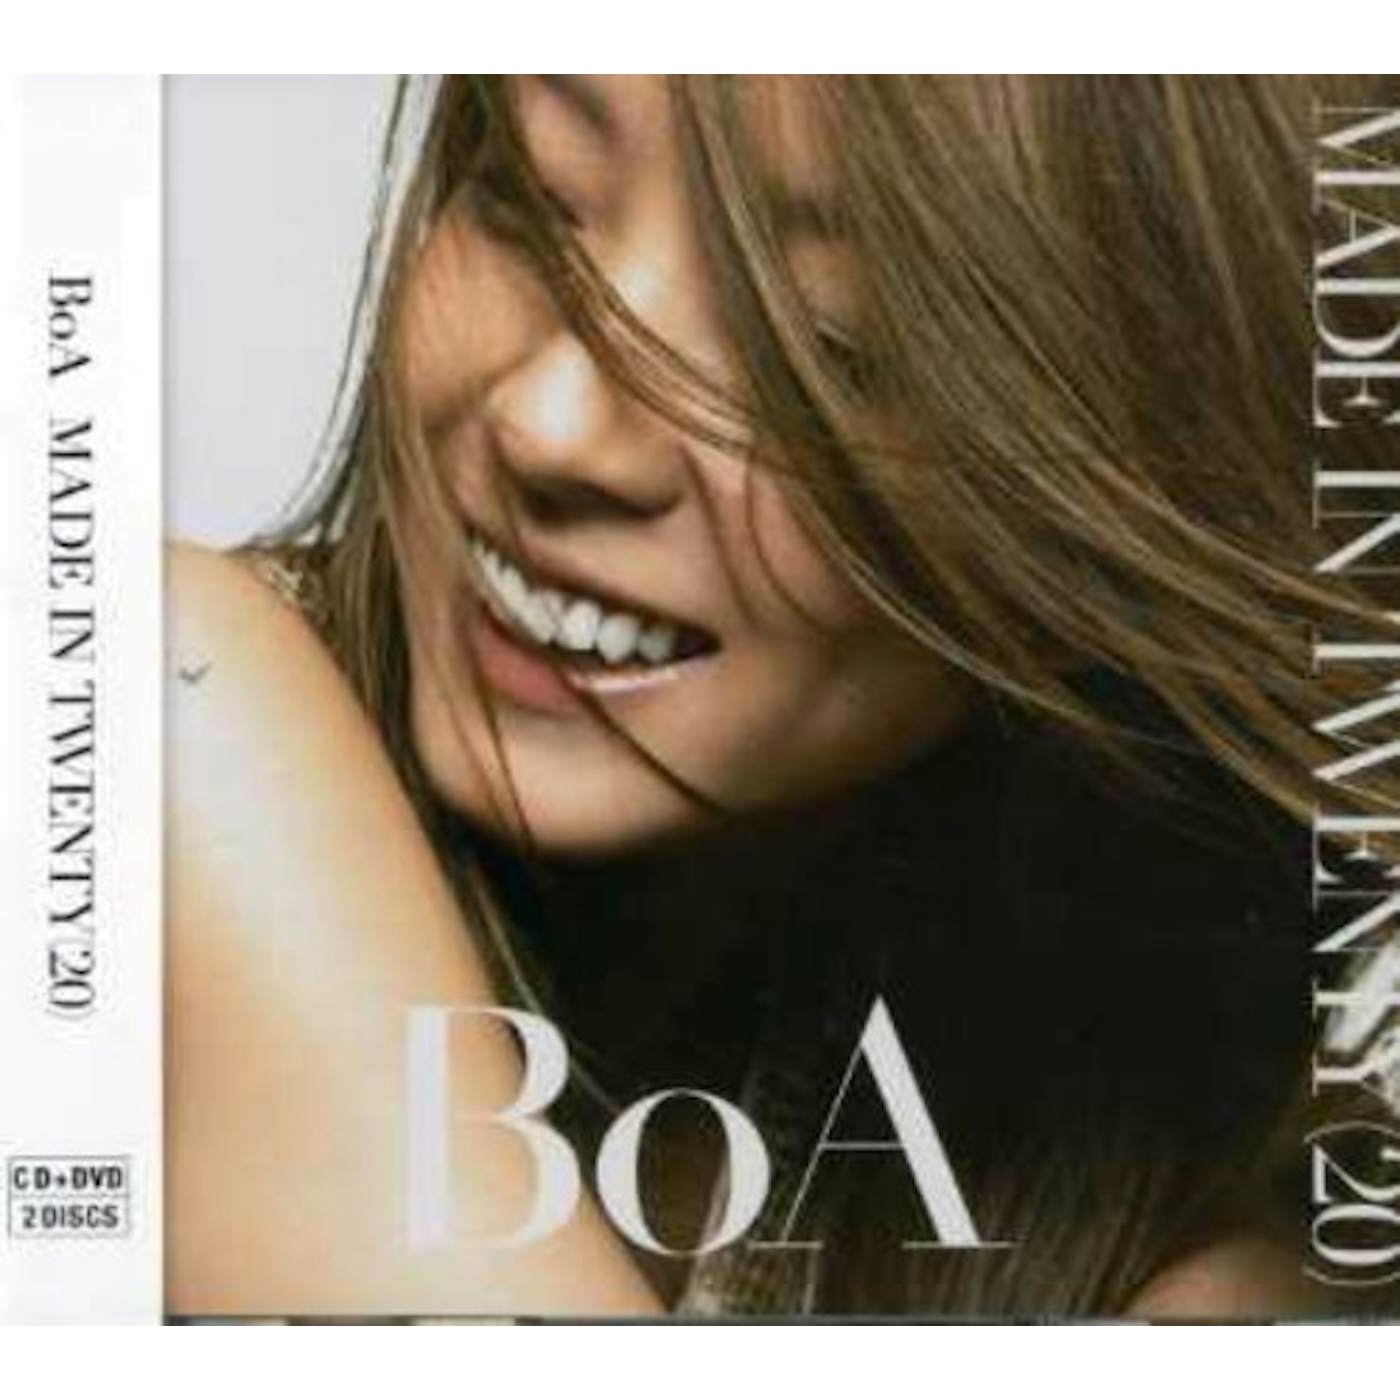 BoA MADE IN TWENTY CD